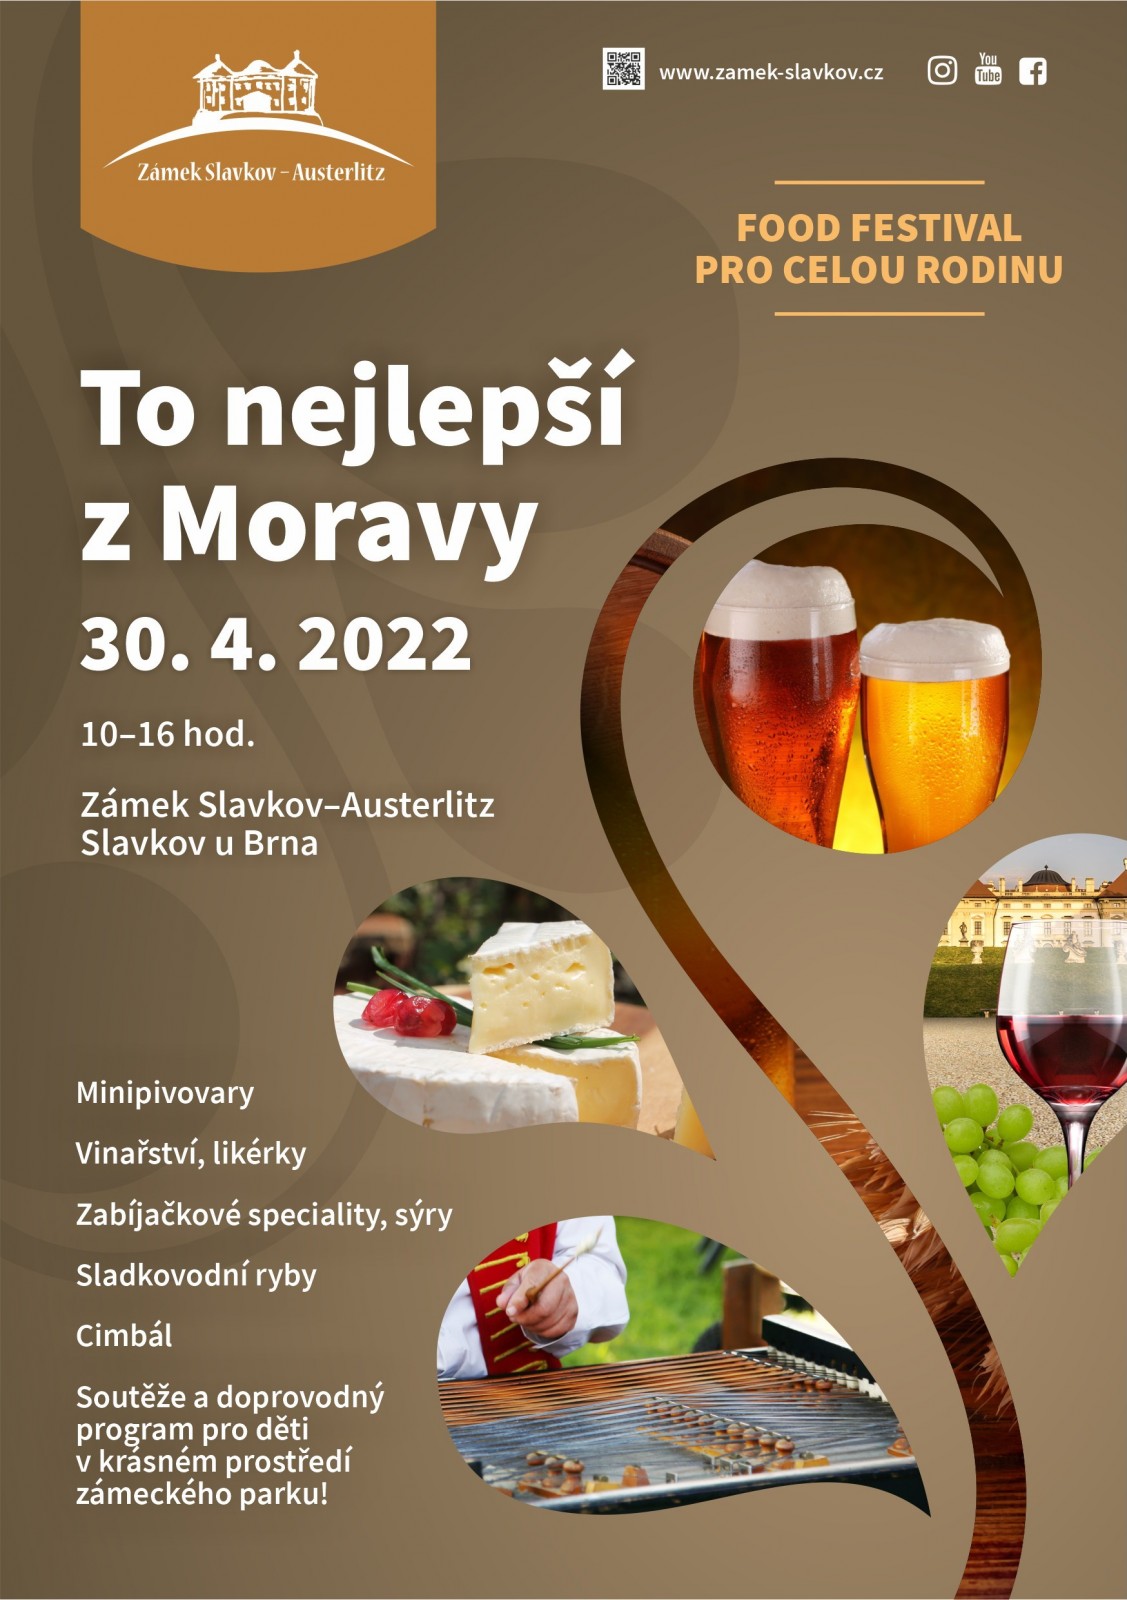 To nejlepší z Moravy - food festival